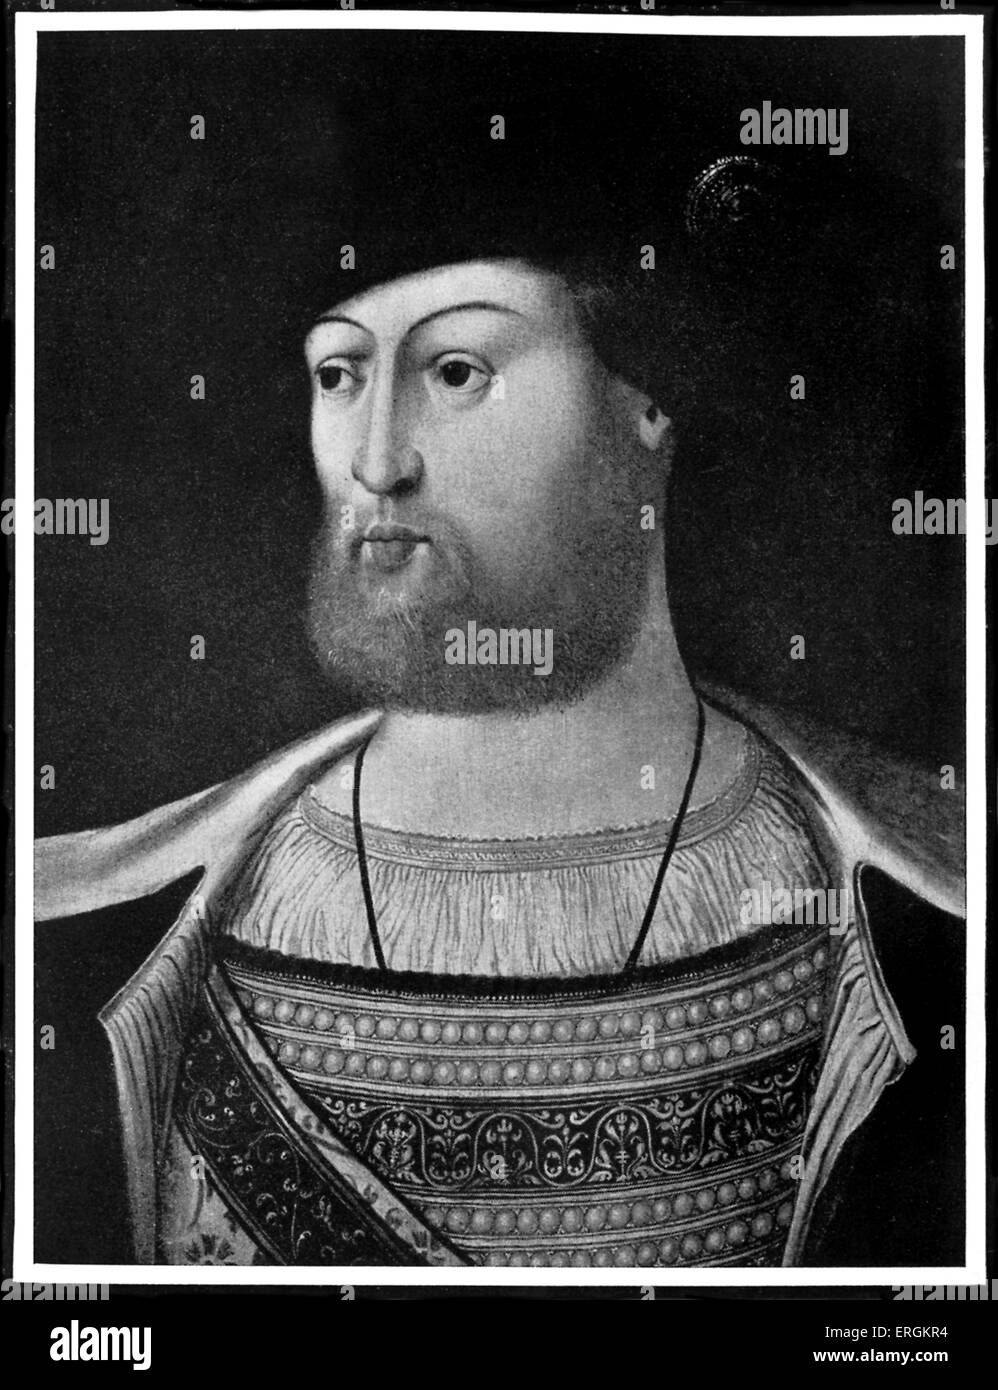 König Heinrich VIII. (1491-1547). König von England von 1509 bis zu seinem Tod. Porträt von unbekannten Künstler. Stockfoto